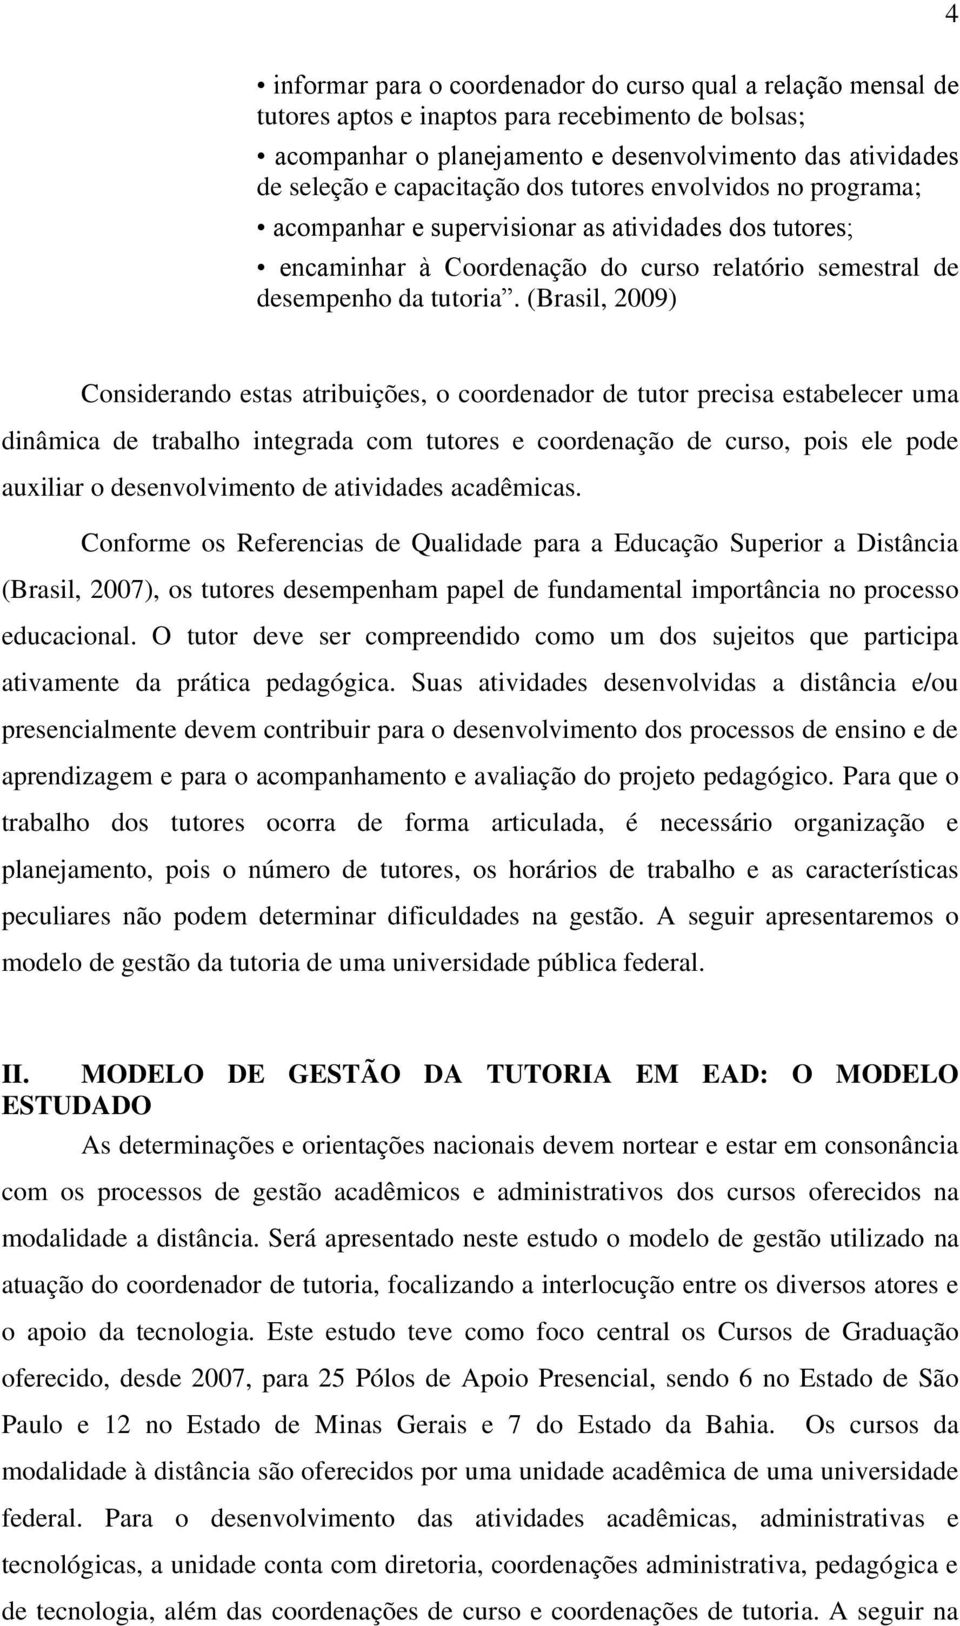 (Brasil, 2009) 4 Considerando estas atribuições, o coordenador de tutor precisa estabelecer uma dinâmica de trabalho integrada com tutores e coordenação de curso, pois ele pode auxiliar o